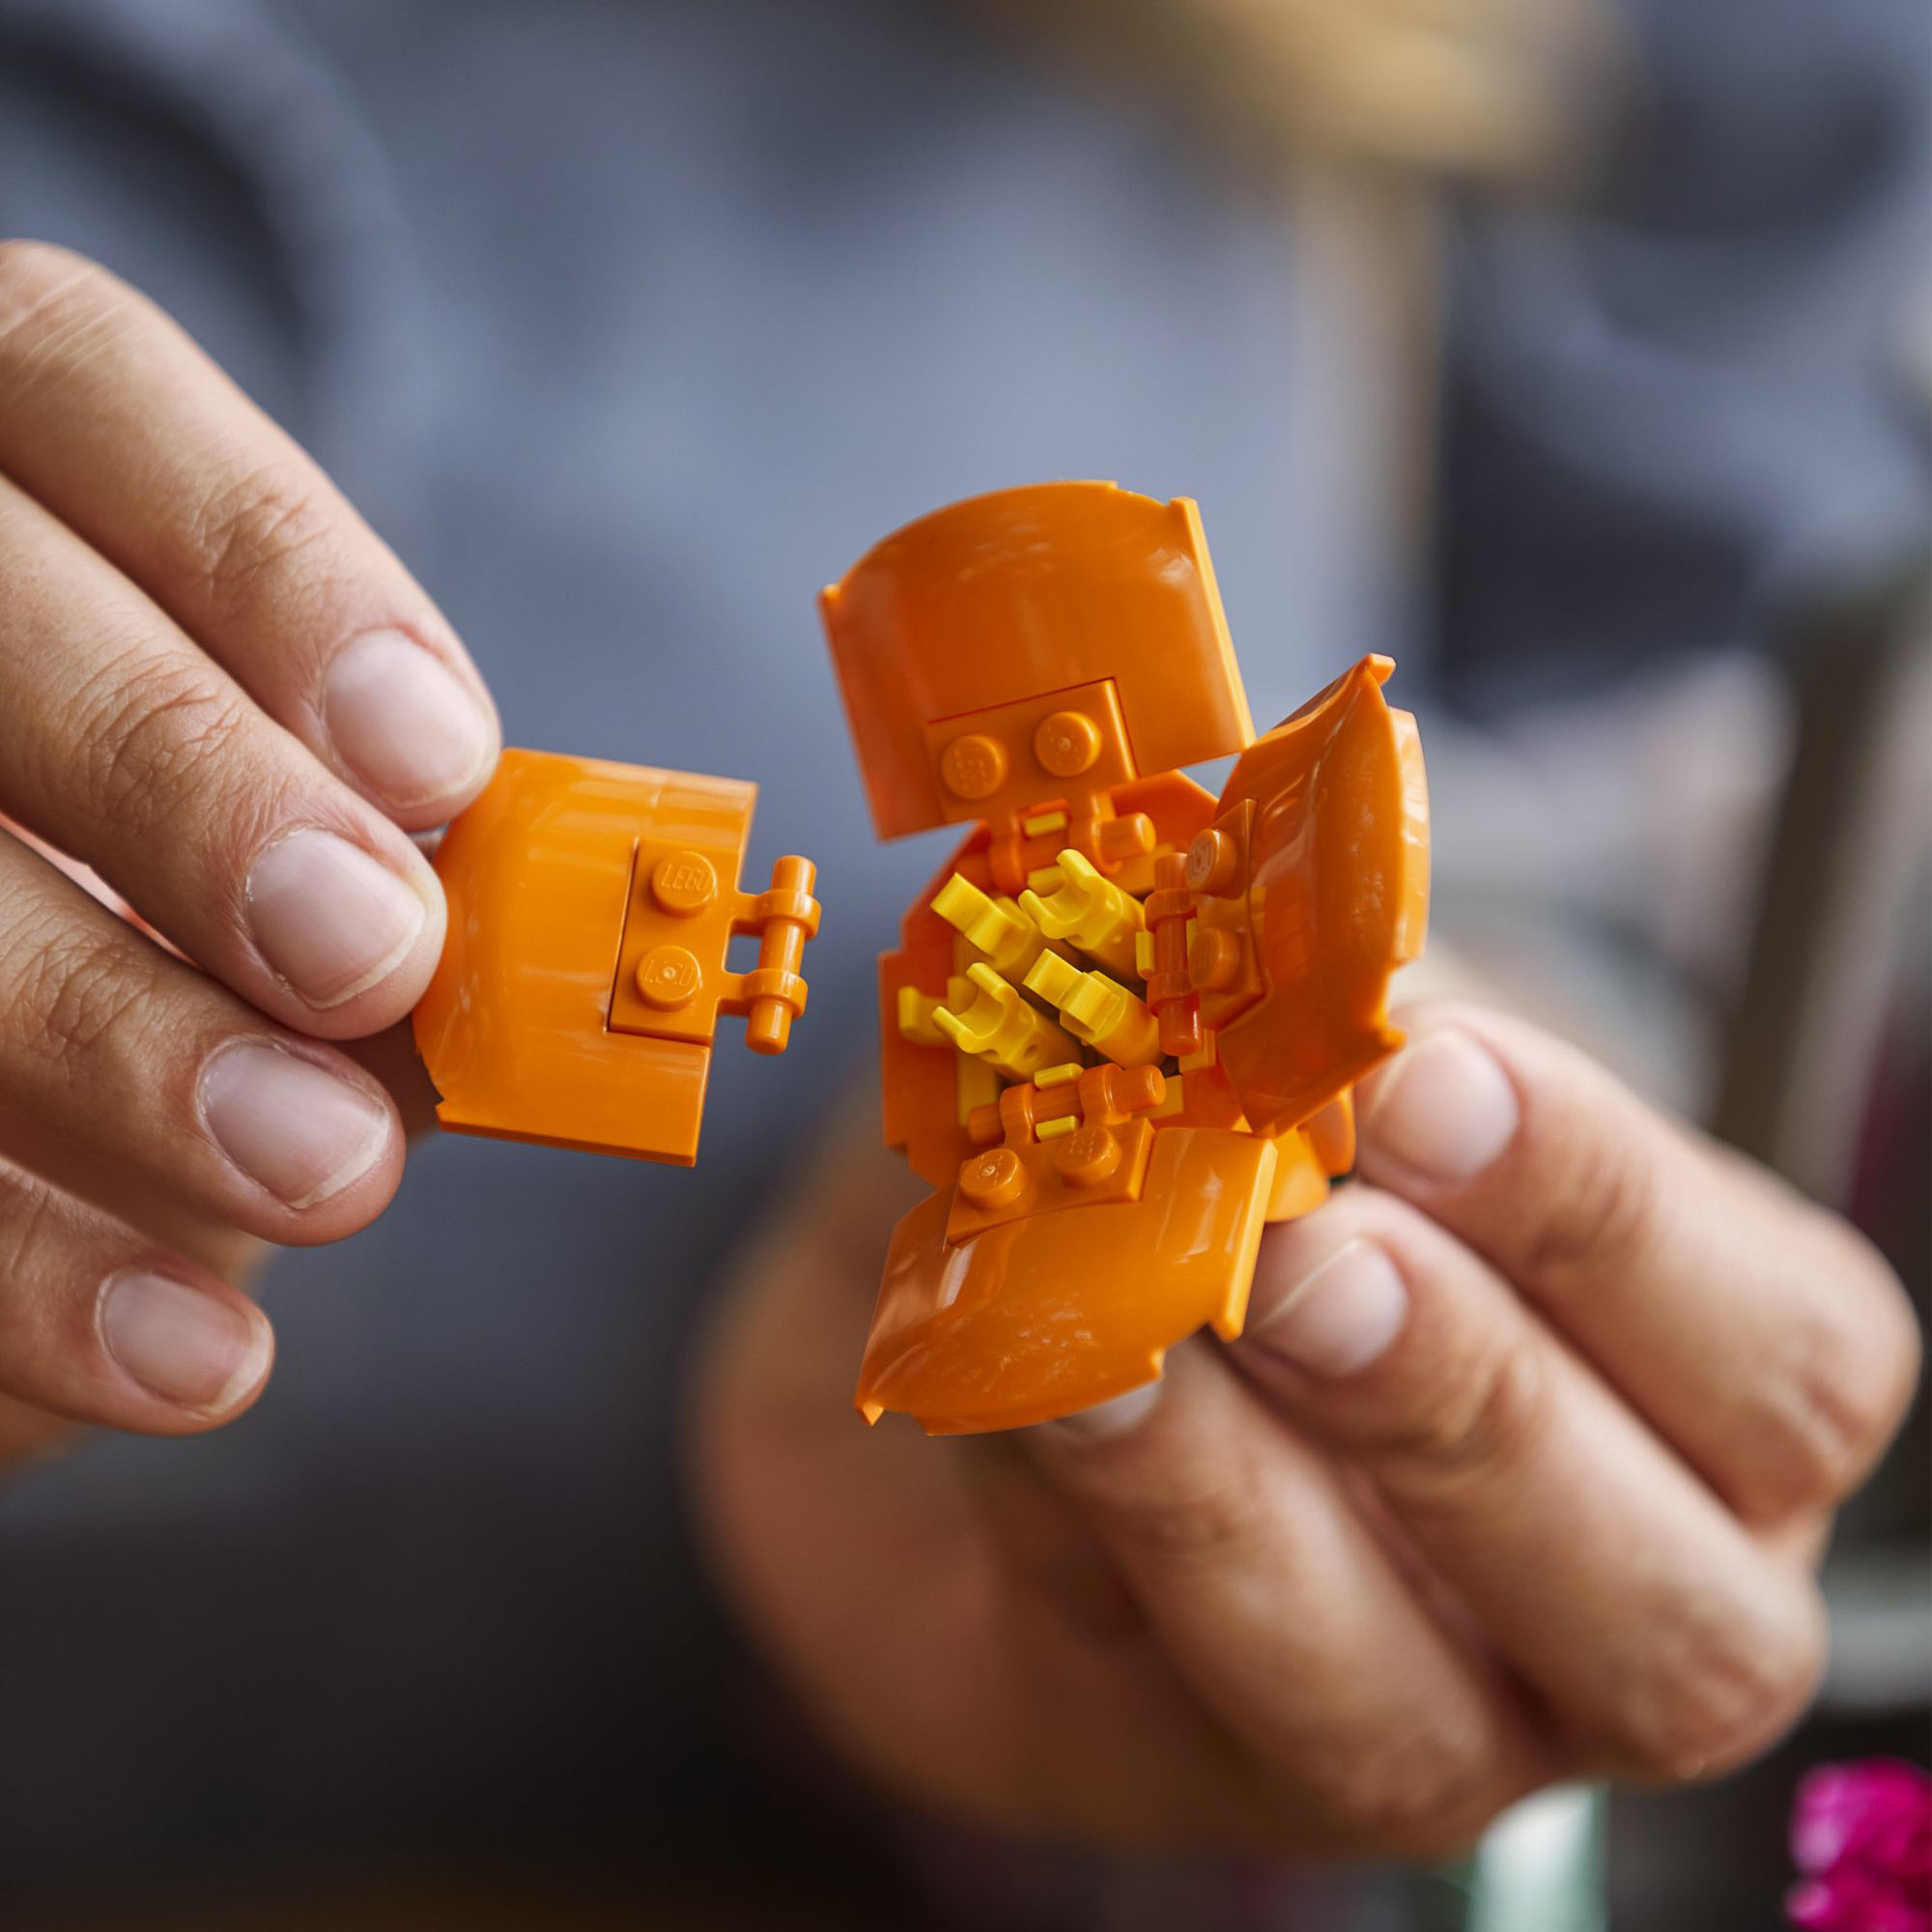 LEGO Creator Expert Bouquet di Fiori, Piante Artificiali, Oggetti per la Casa, H 10280, , large